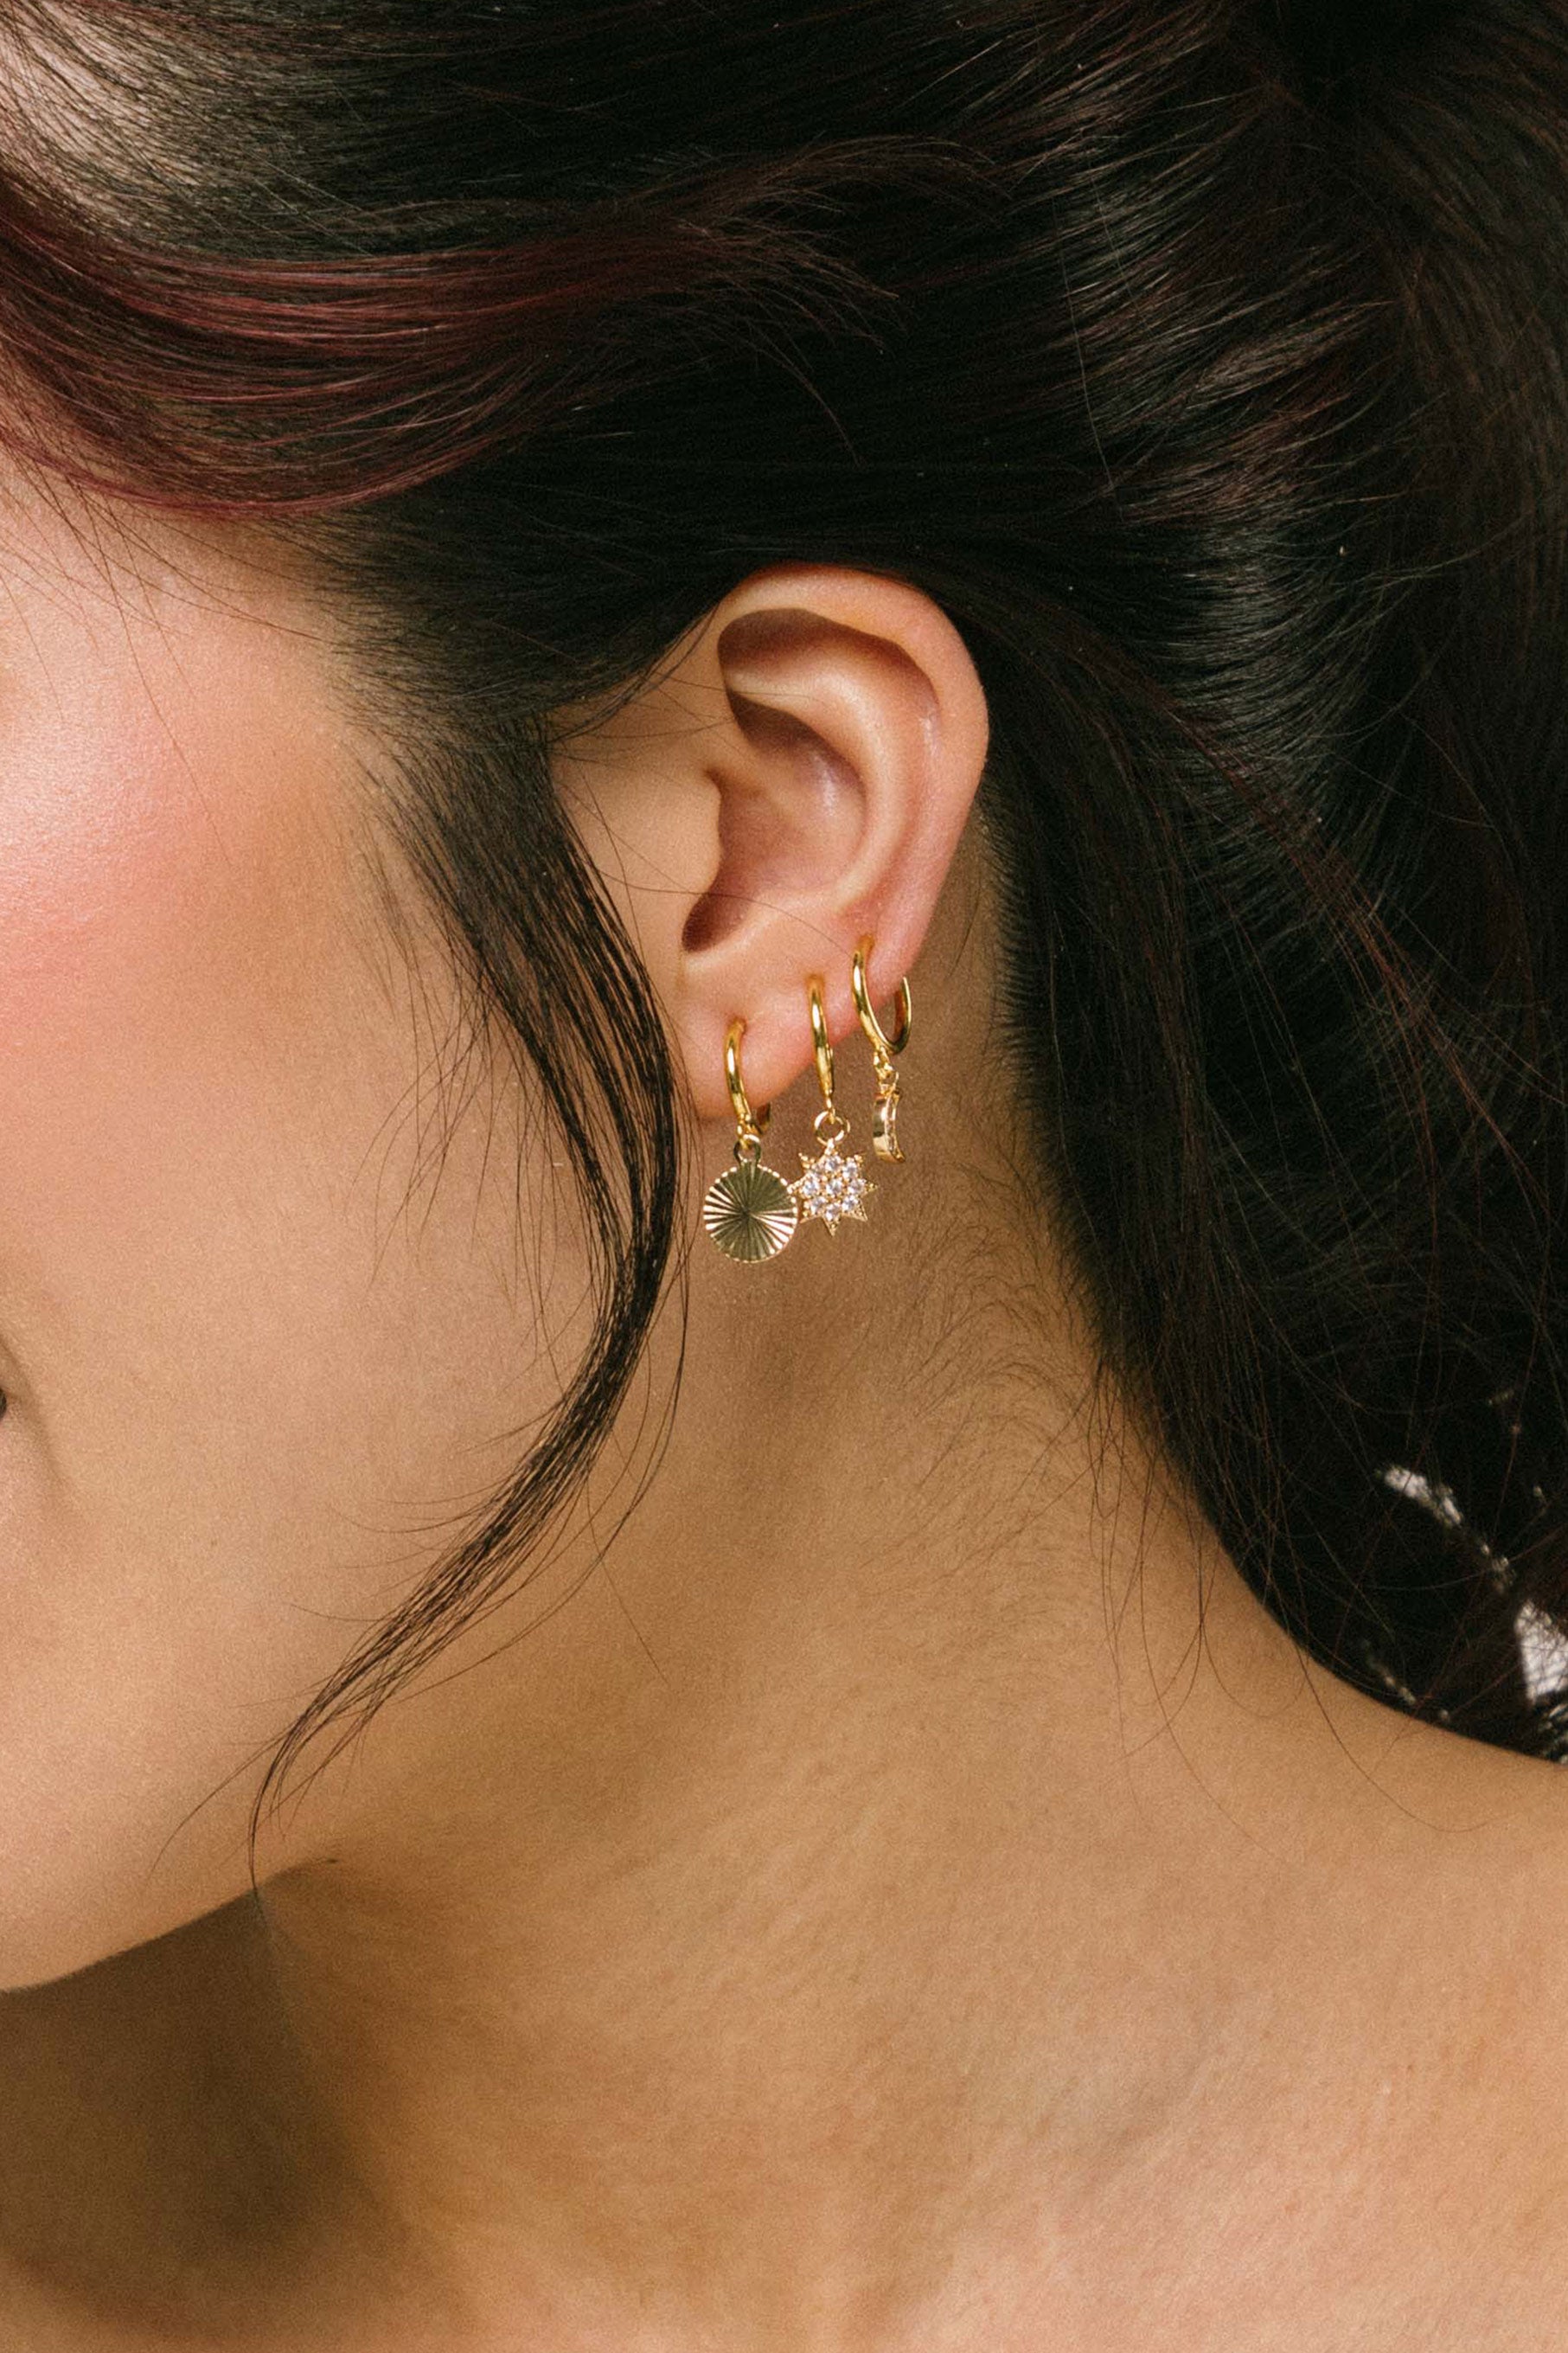 Buy Earrings Online in Pakistan - Zenaay.com – zenaay.com